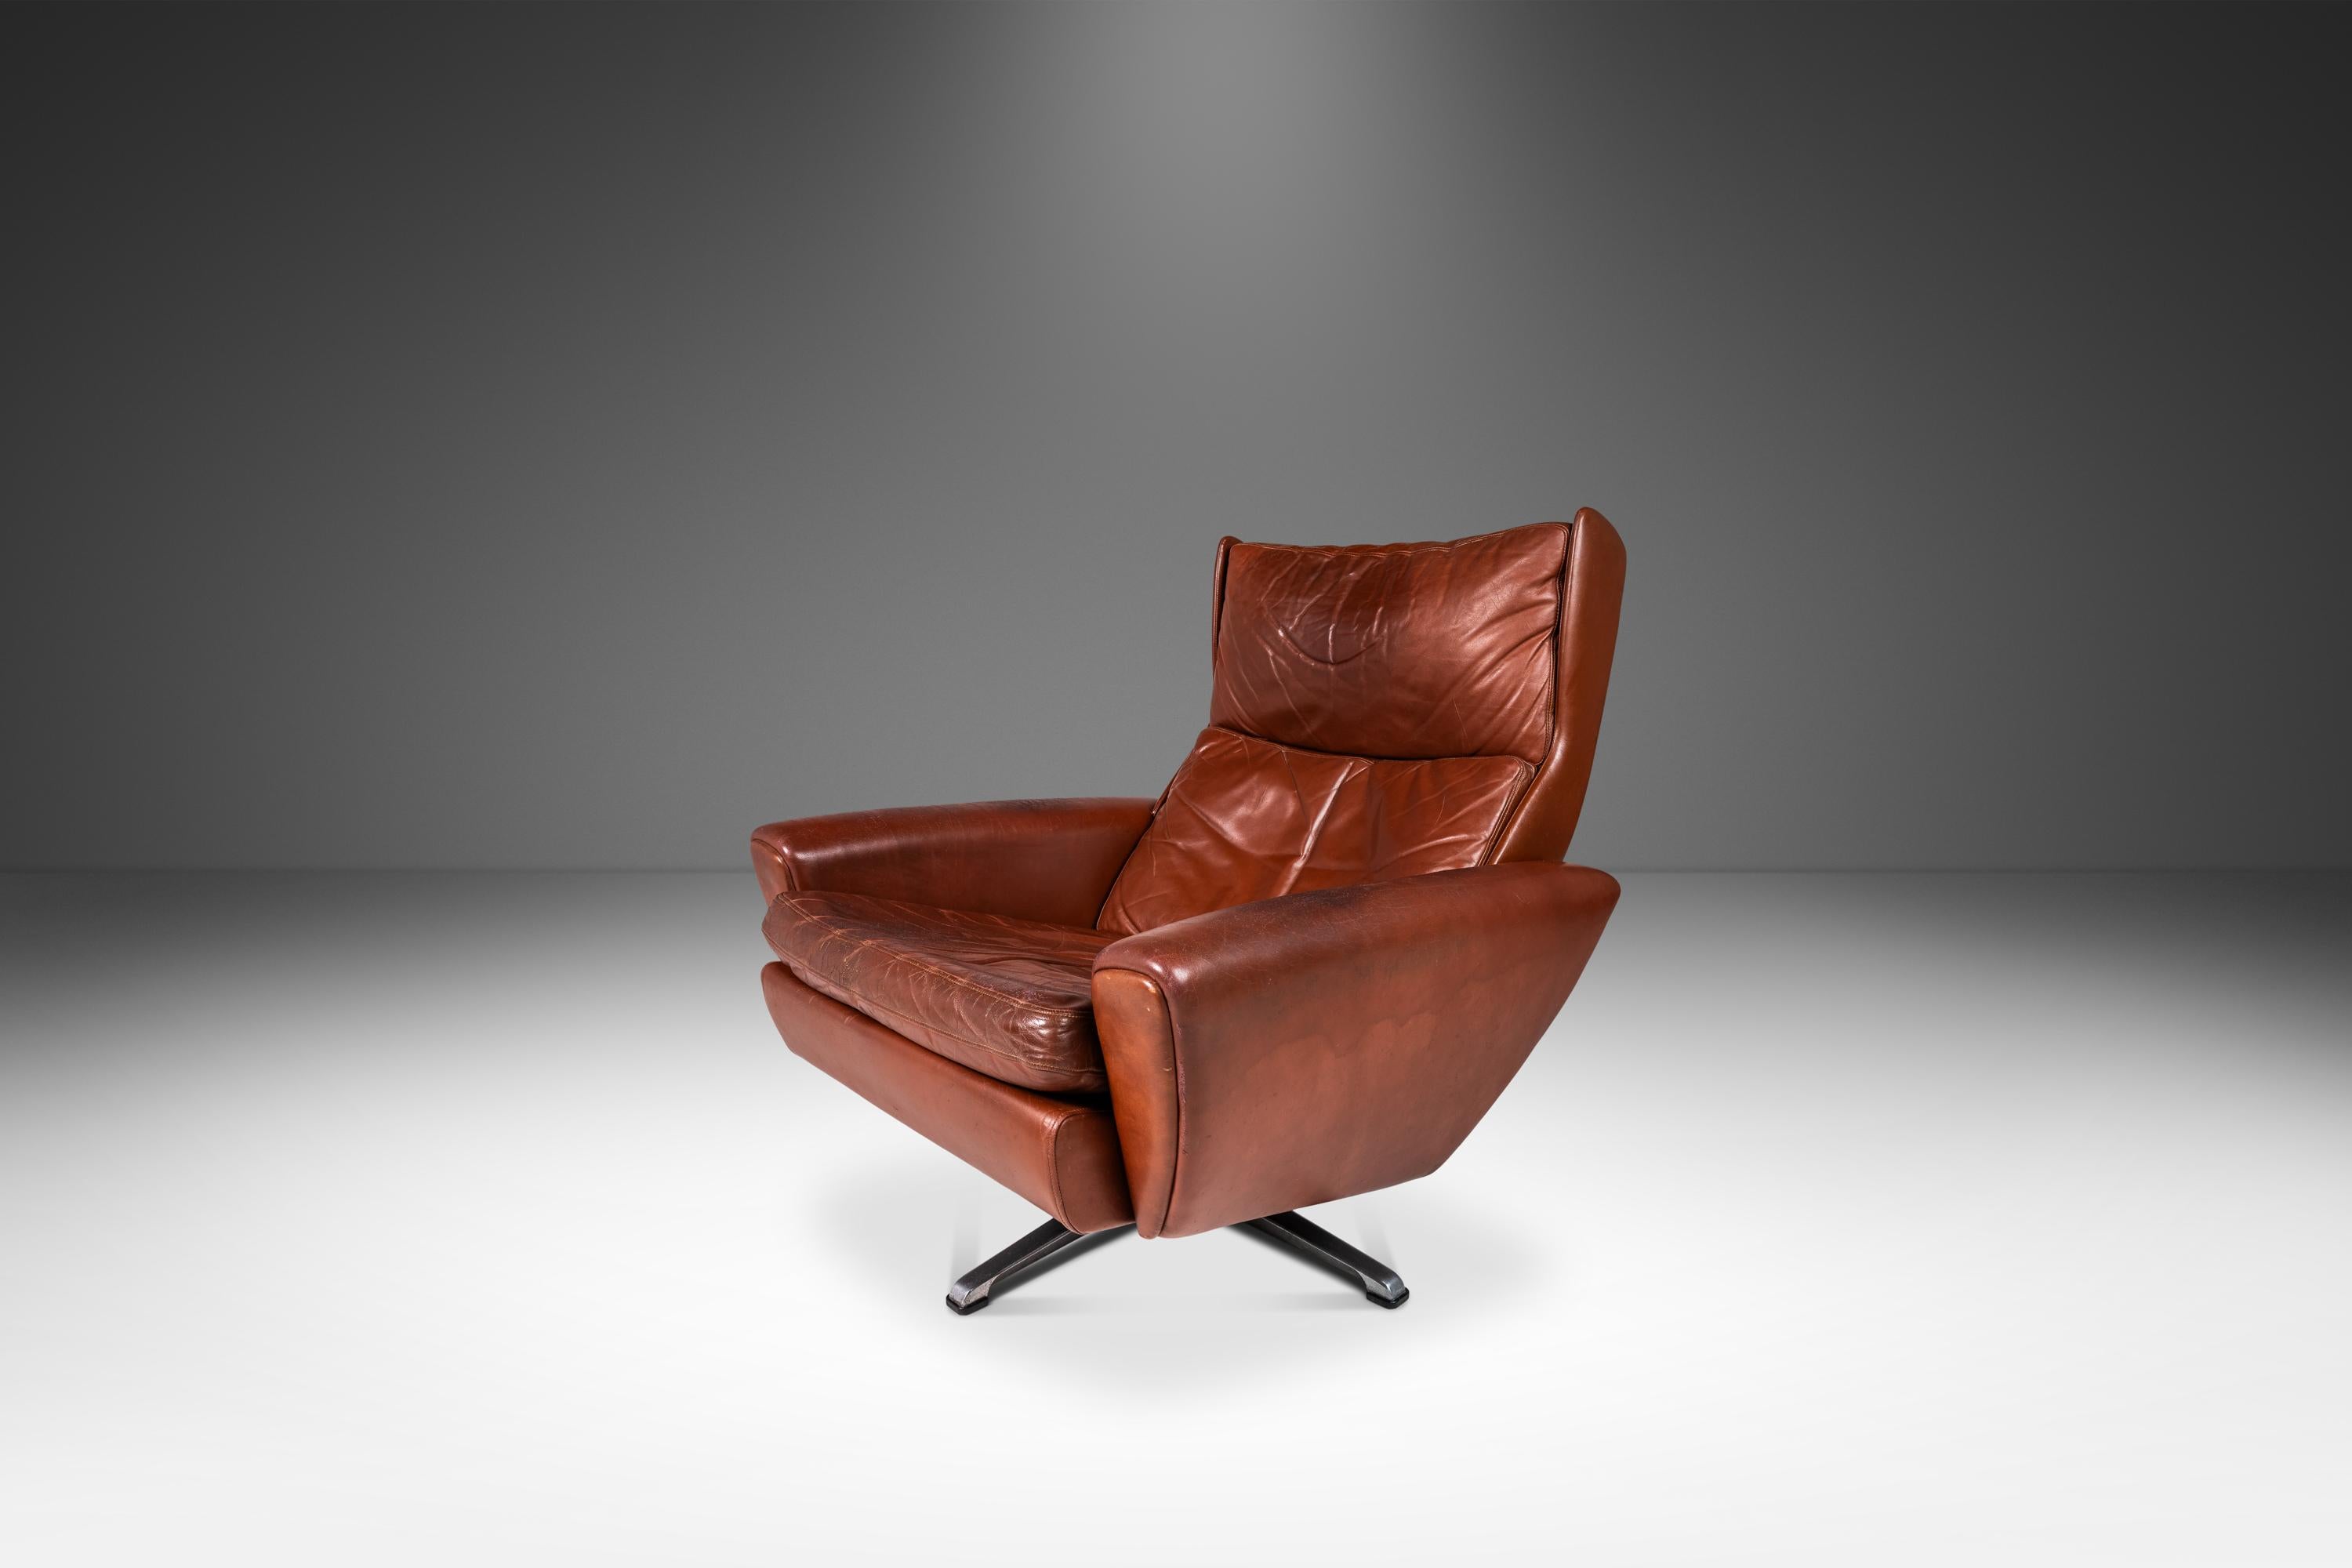 Wir präsentieren ein seltenes, authentisches dänisches modernes 'Fåtölj' Modell 68 Sessel- und Hocker-Set, entworfen von dem einflussreichen Georg Thams für A. S. Vejen Polstermøbelfabrik. Dieses 1968 entworfene und gefertigte Modell ist eine